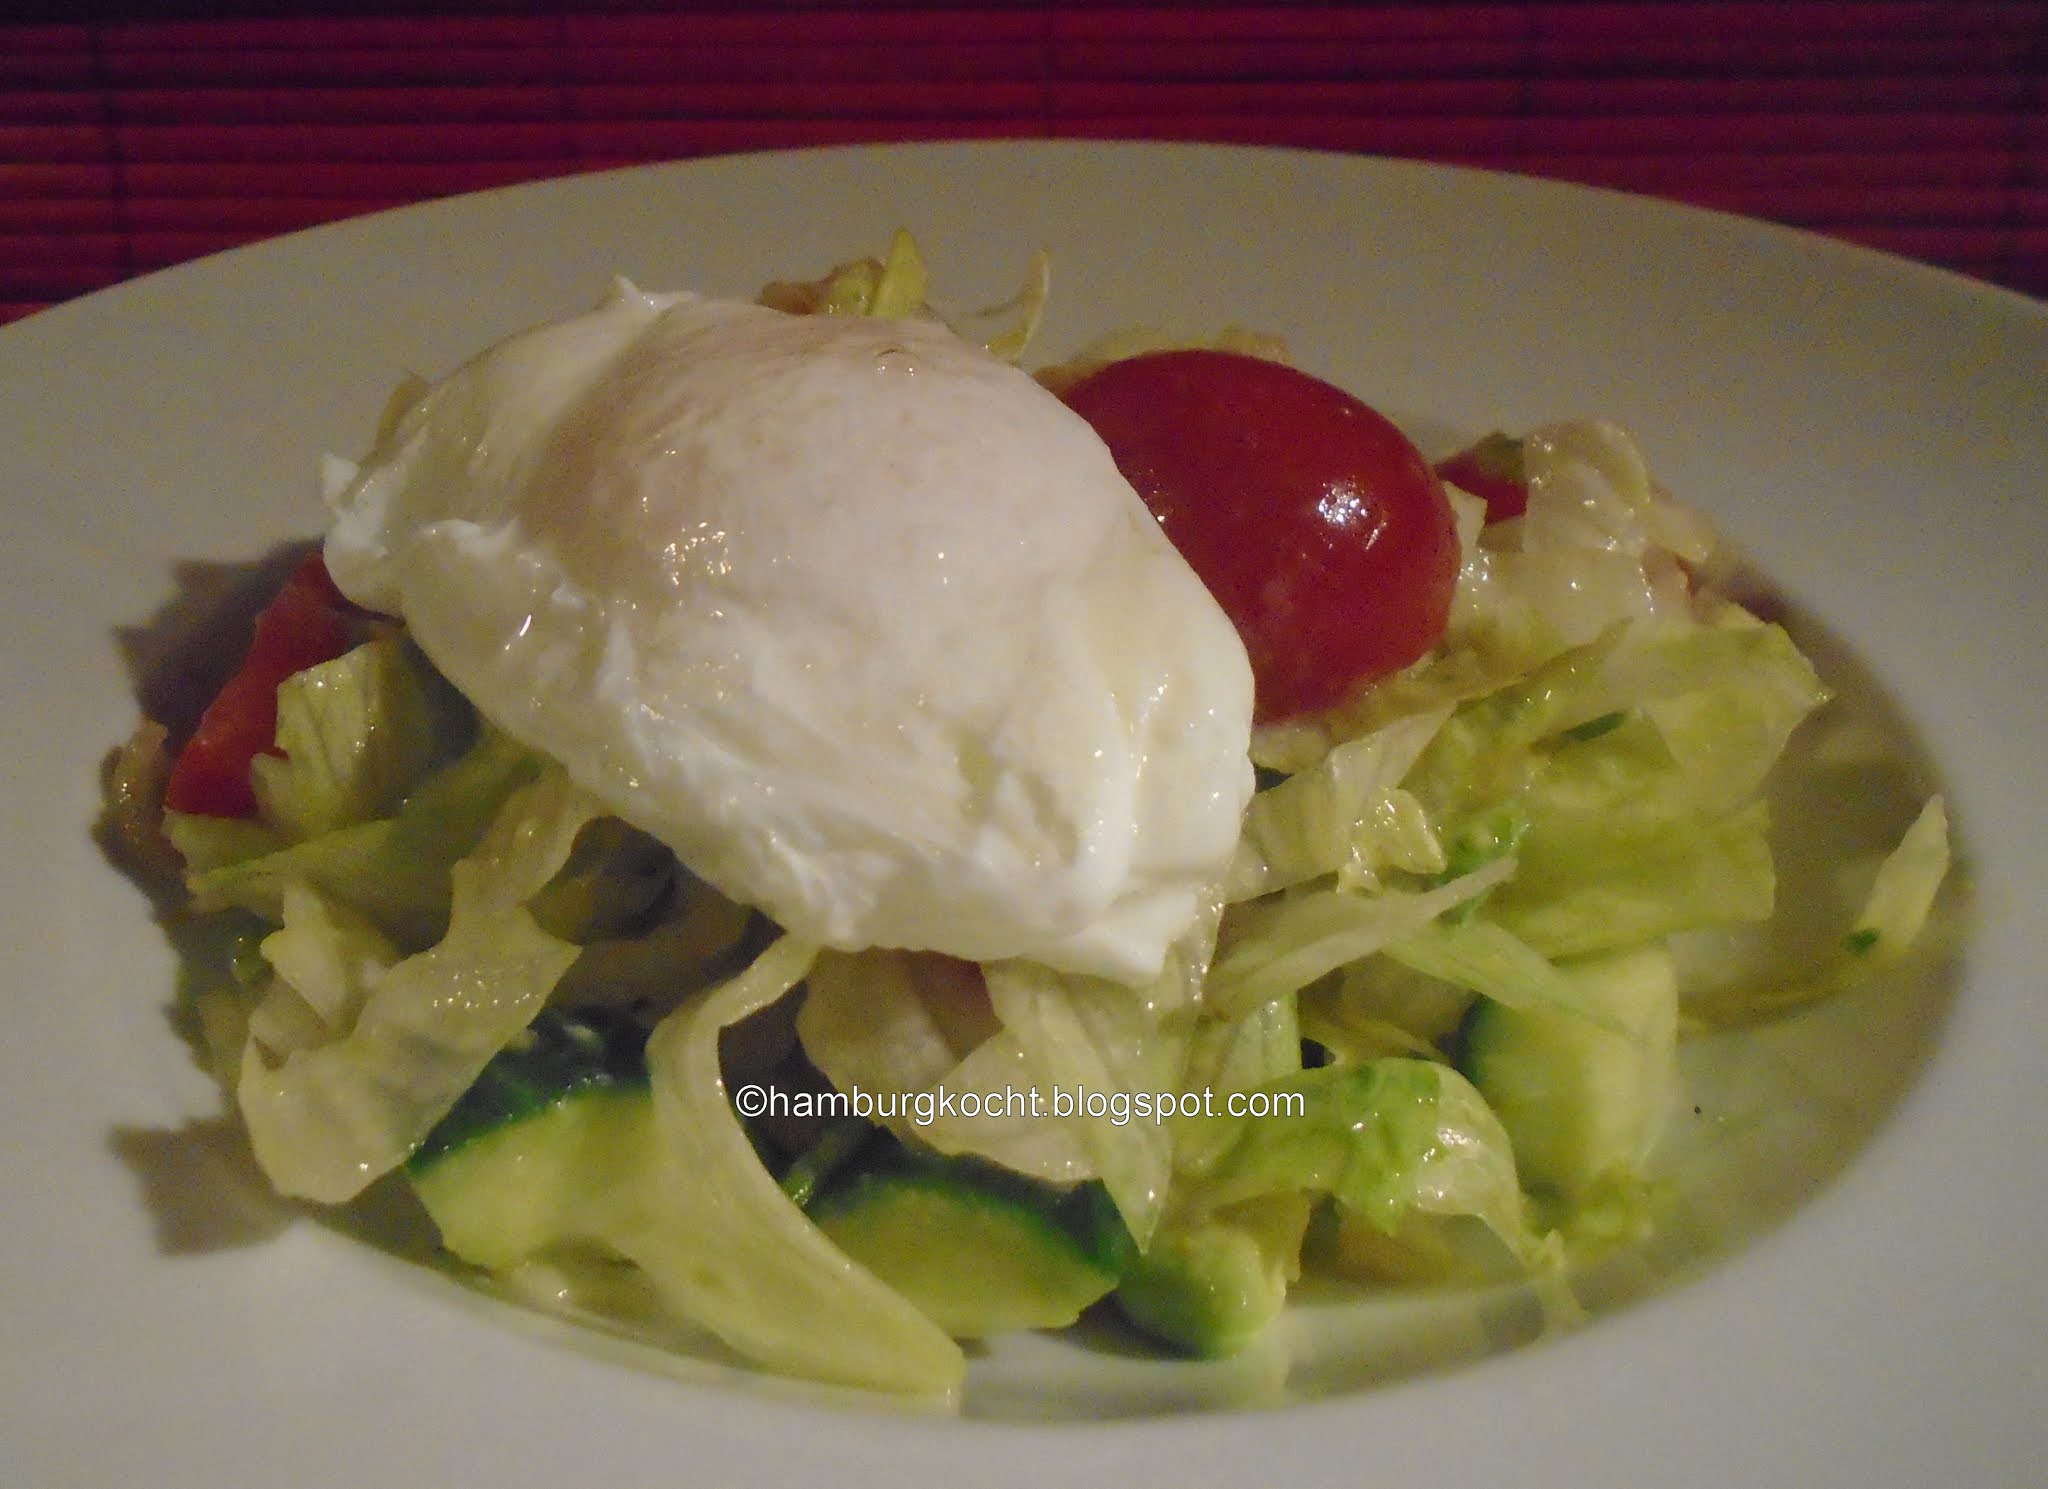 Hamburg kocht!: Pochierte Eier auf gemischtem Salat